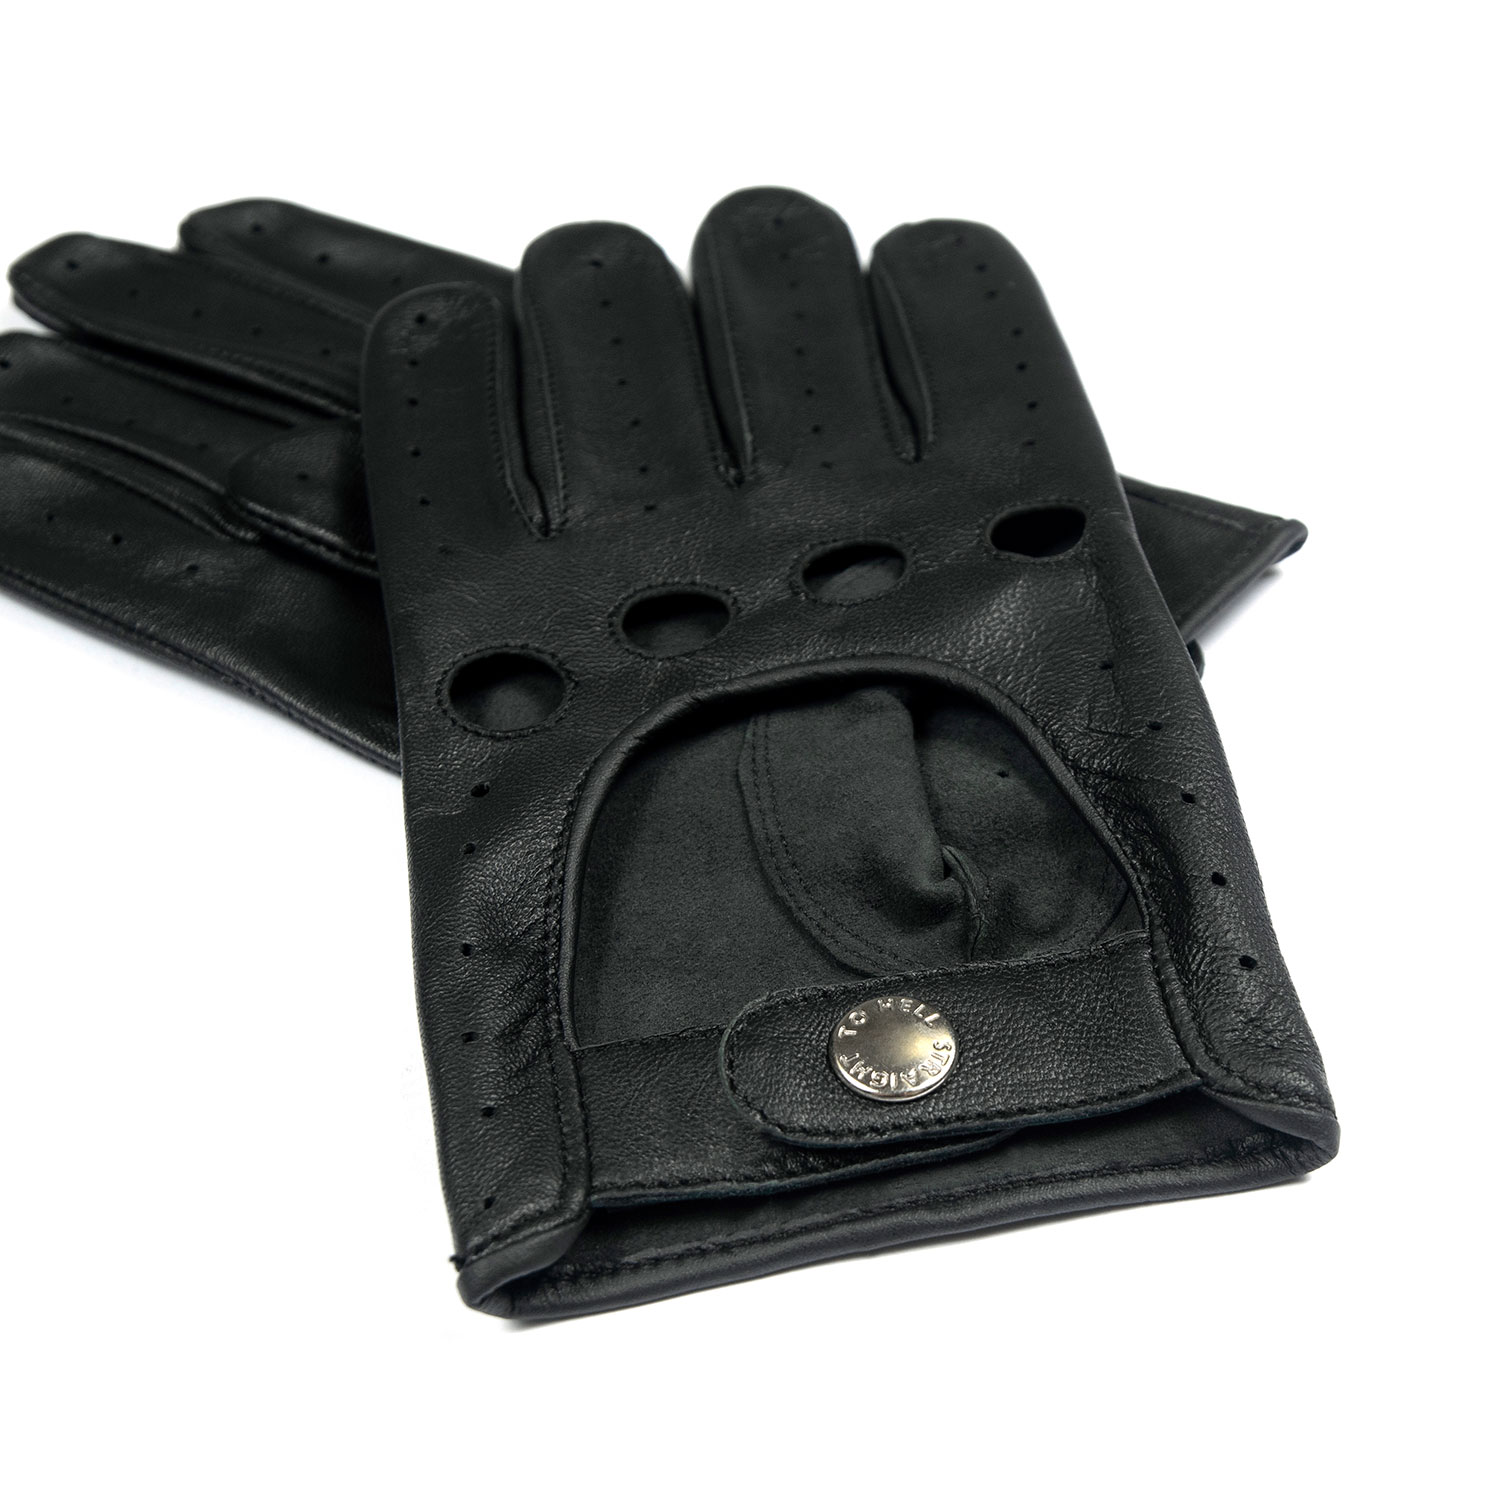 Straight to Hell Men's Bullitt Fingerless Leather Gloves